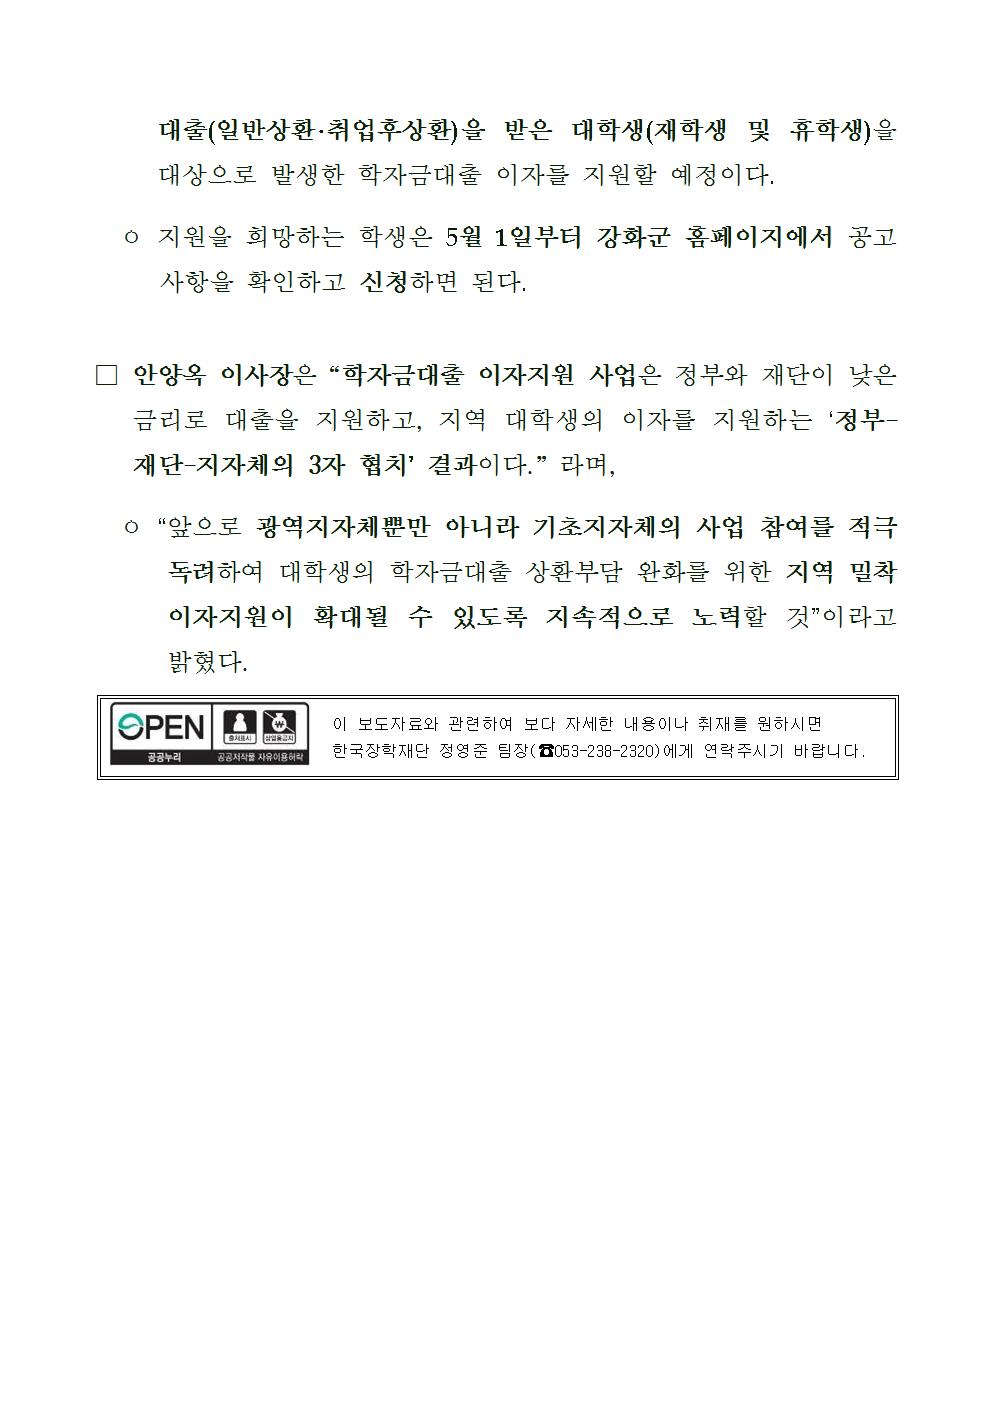 04-03(화)[보도자료] 한국장학재단-강화군, 학자금대출 이자지원 업무협약 체결002.jpg